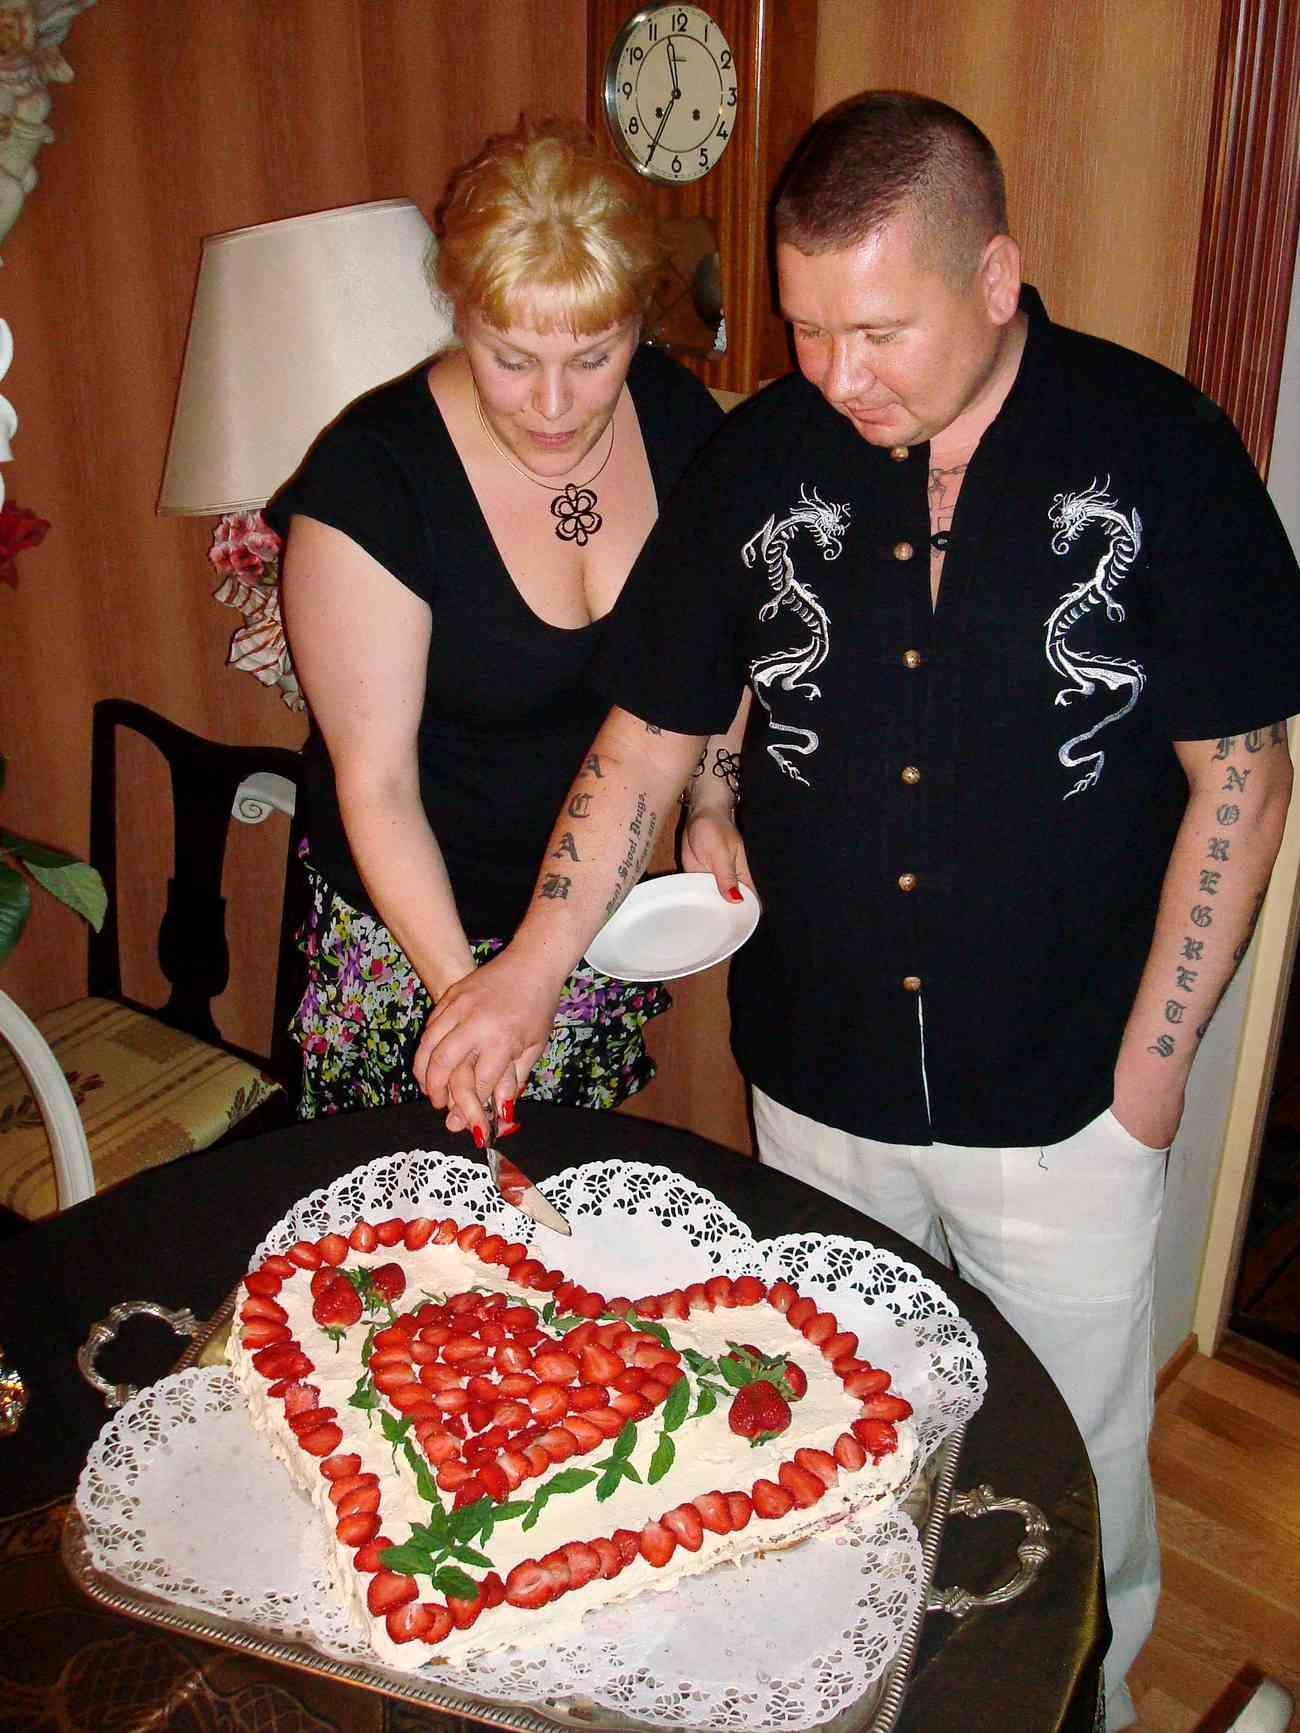 Med flera knivhugg dödade Juha Ruotsalainen 2009 sin dåvarande flickvän Johanna Puolusmäki. 